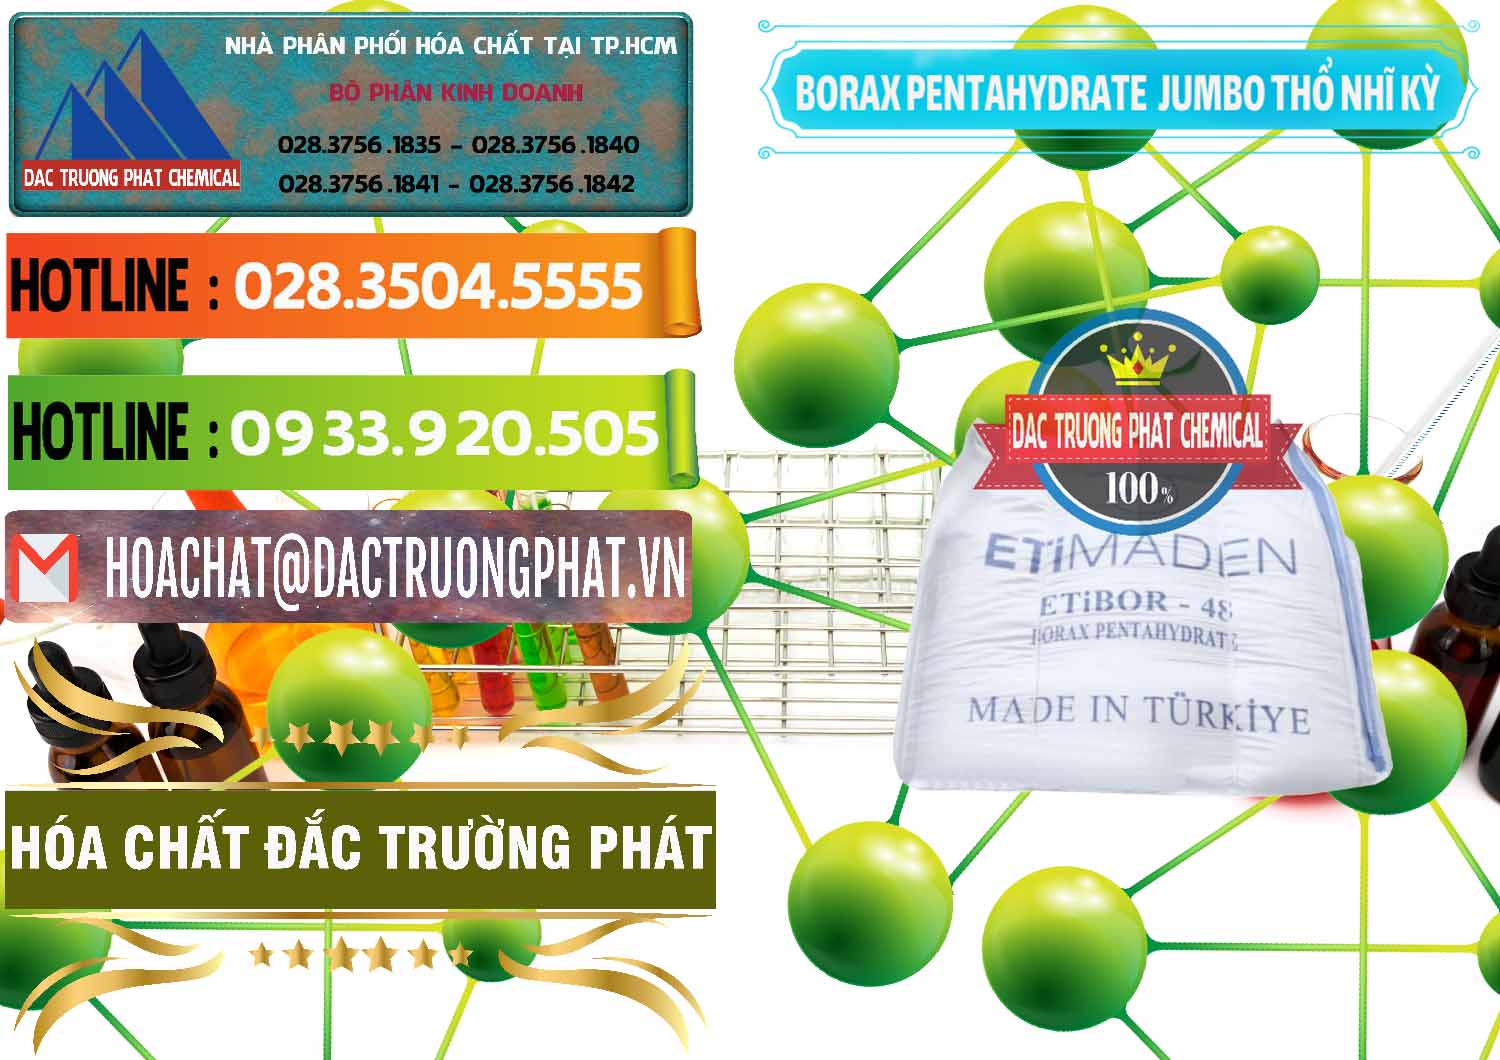 Đơn vị cung ứng & bán Borax Pentahydrate Bao Jumbo ( Bành ) Thổ Nhĩ Kỳ Turkey - 0424 - Nhà cung cấp & bán hóa chất tại TP.HCM - cungcaphoachat.com.vn